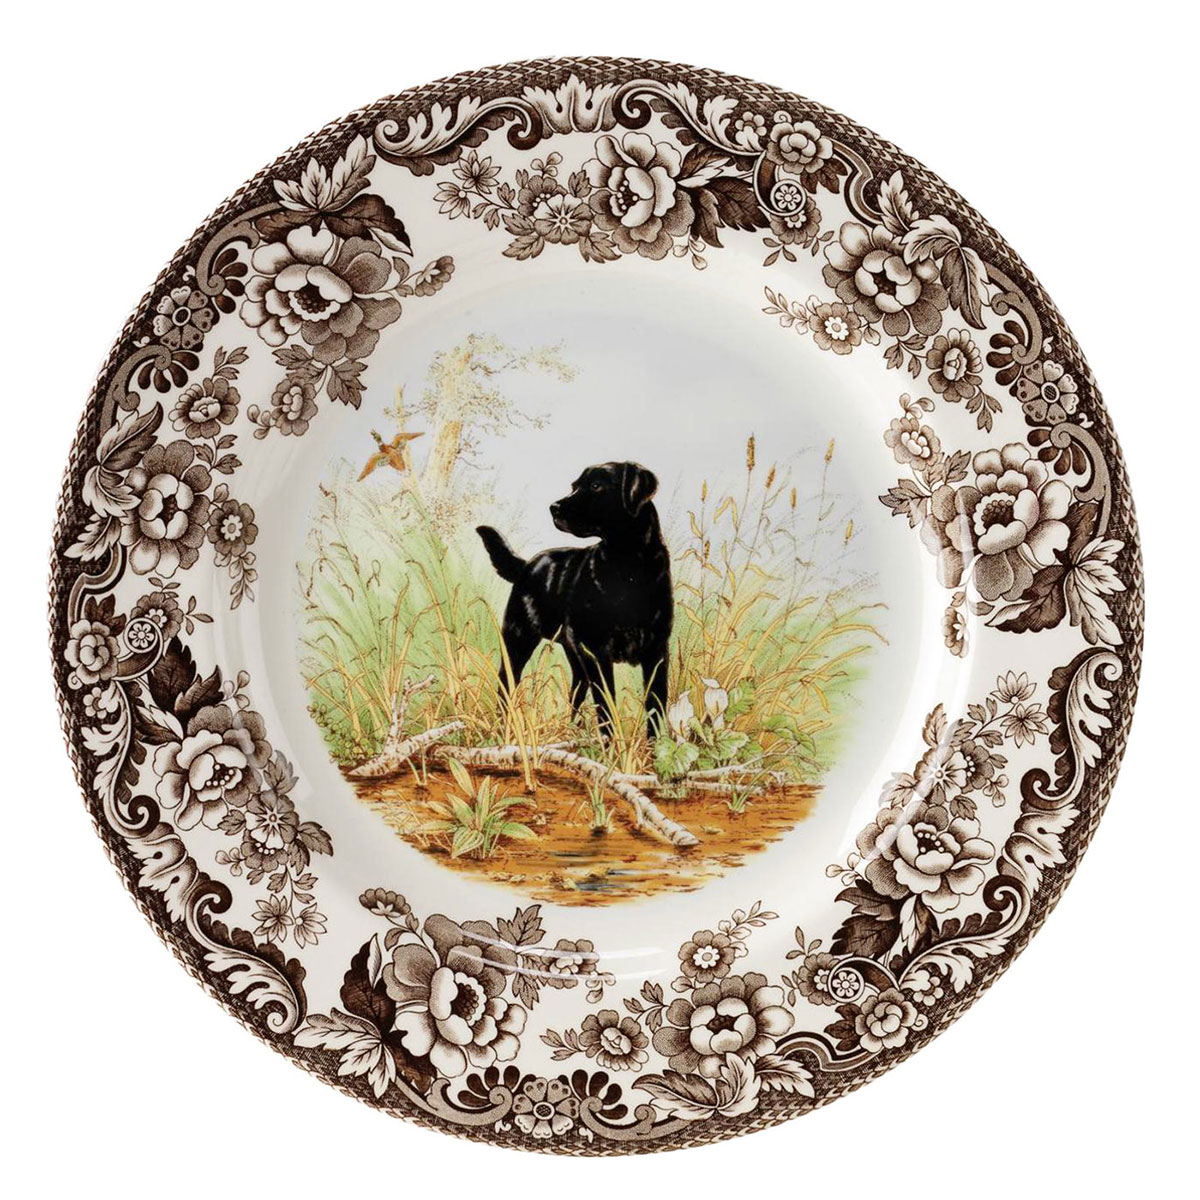 Spode Woodland Hunting Dogs Dinner Plate, Black Labrador Retriever